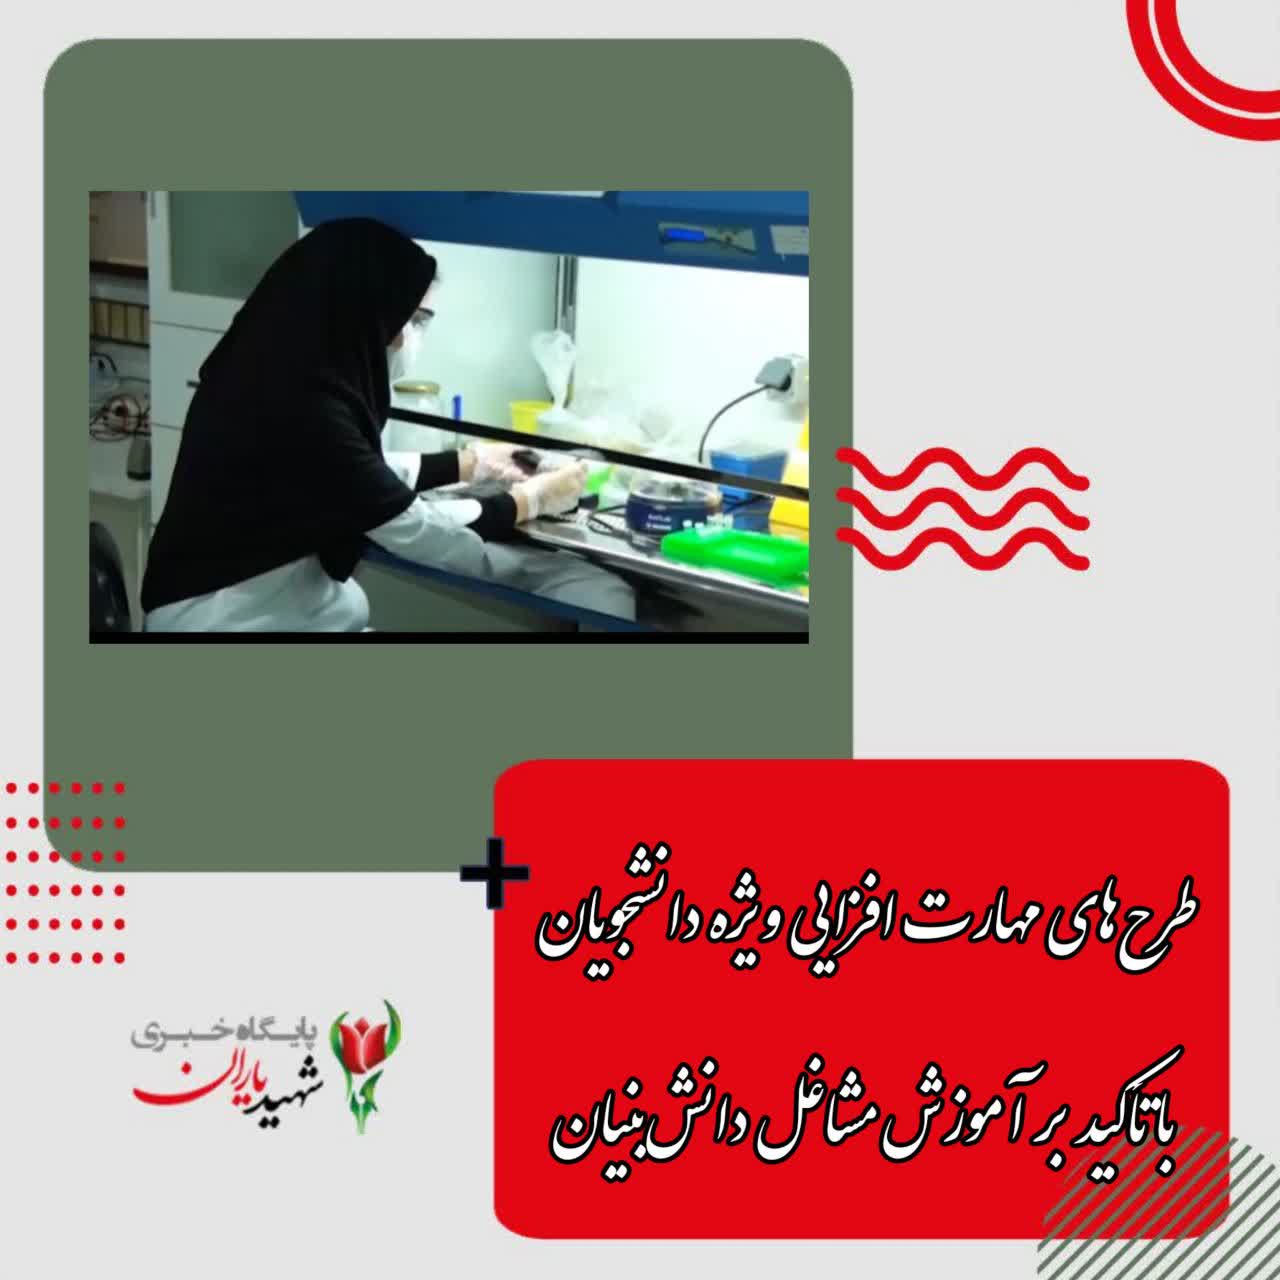 طرح‌های مهارت افزایی ویژه دانشجویان با تأکید بر آموزش مشاغل دانش‌بنیان، فناورانه و نوآورانه در فنی و حرفه‌ای اصفهان در حال اجراست.